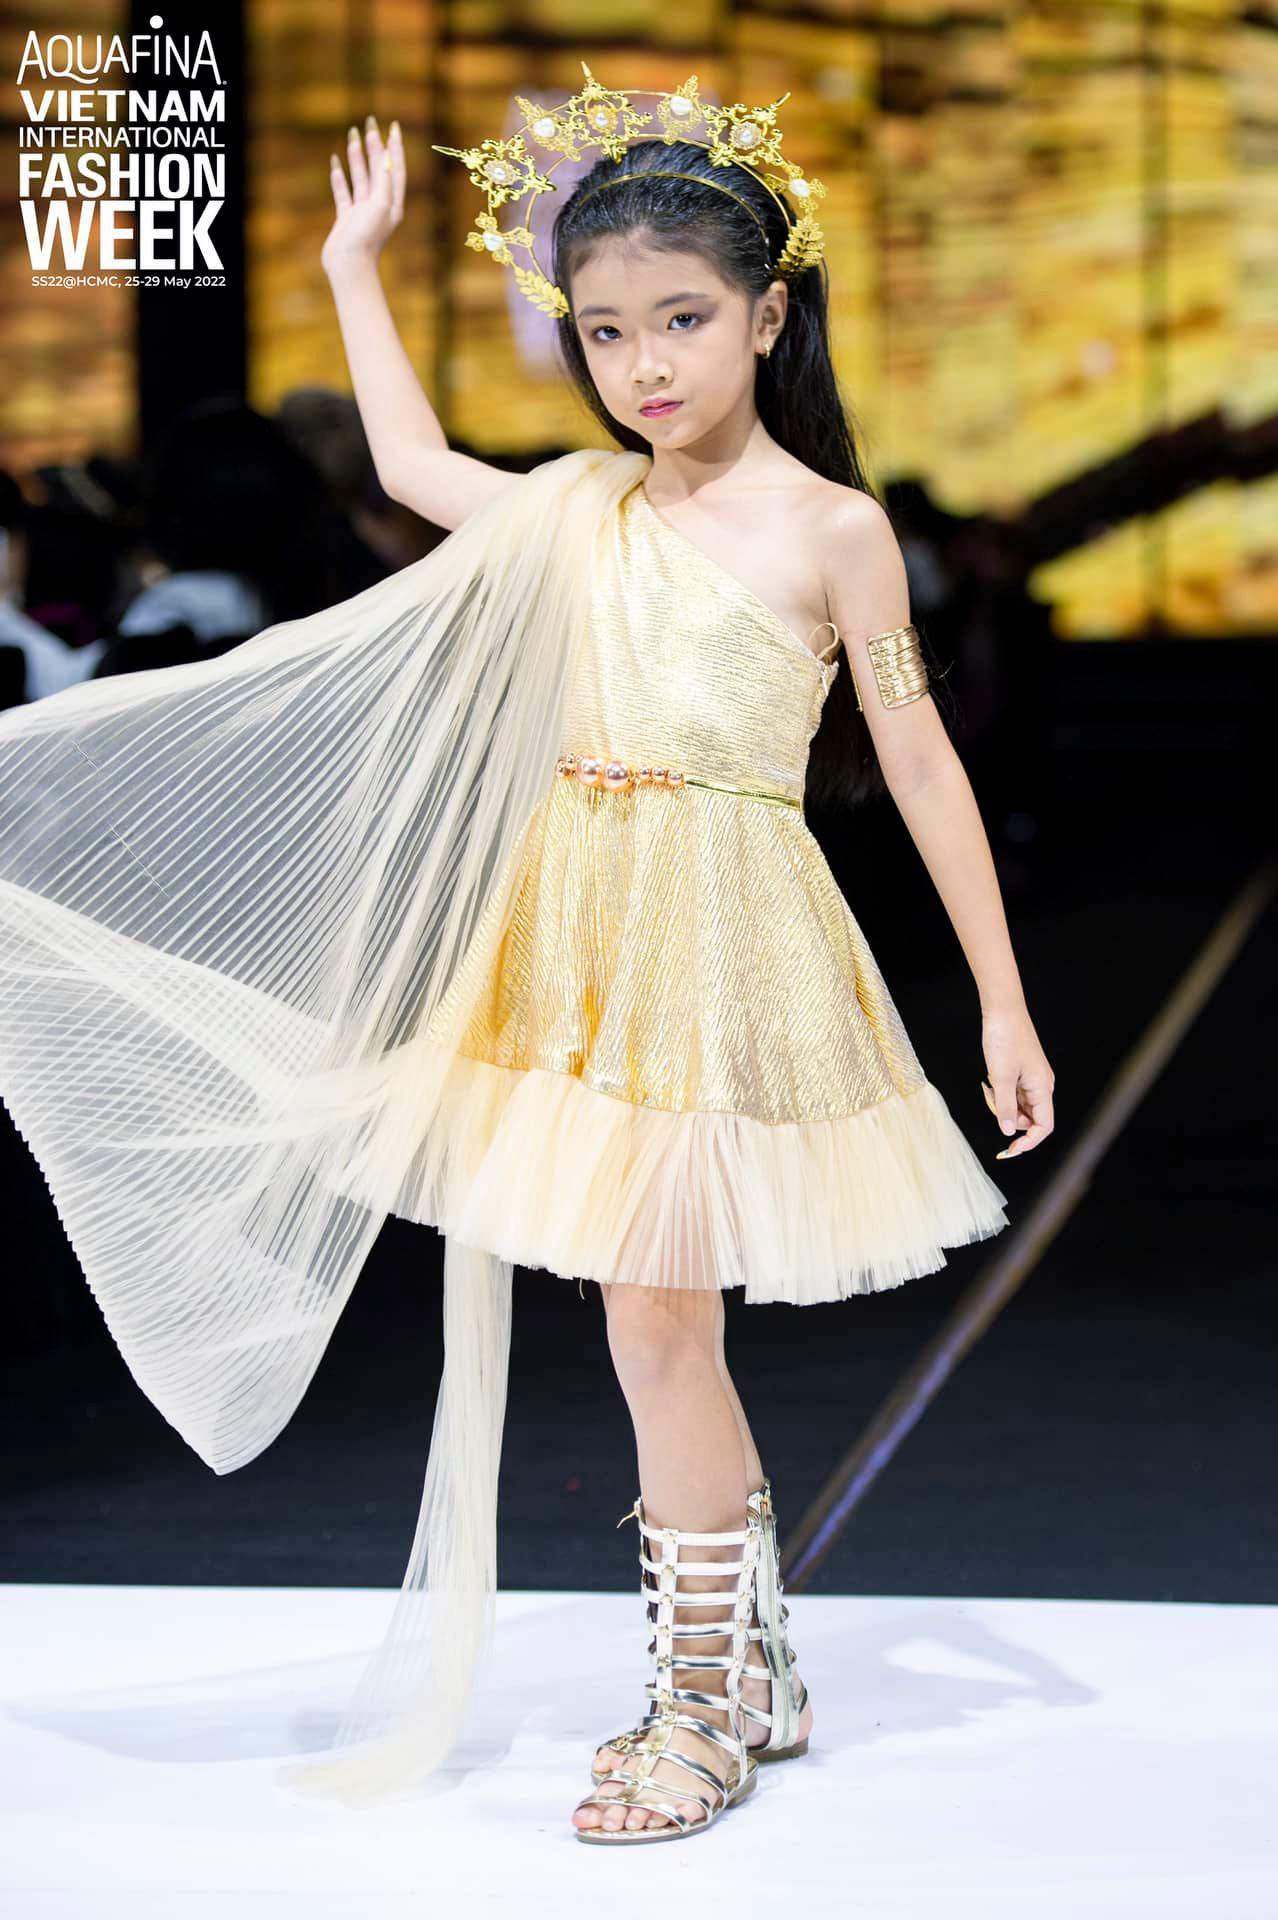 Model Kids Annie Thien Kim 8